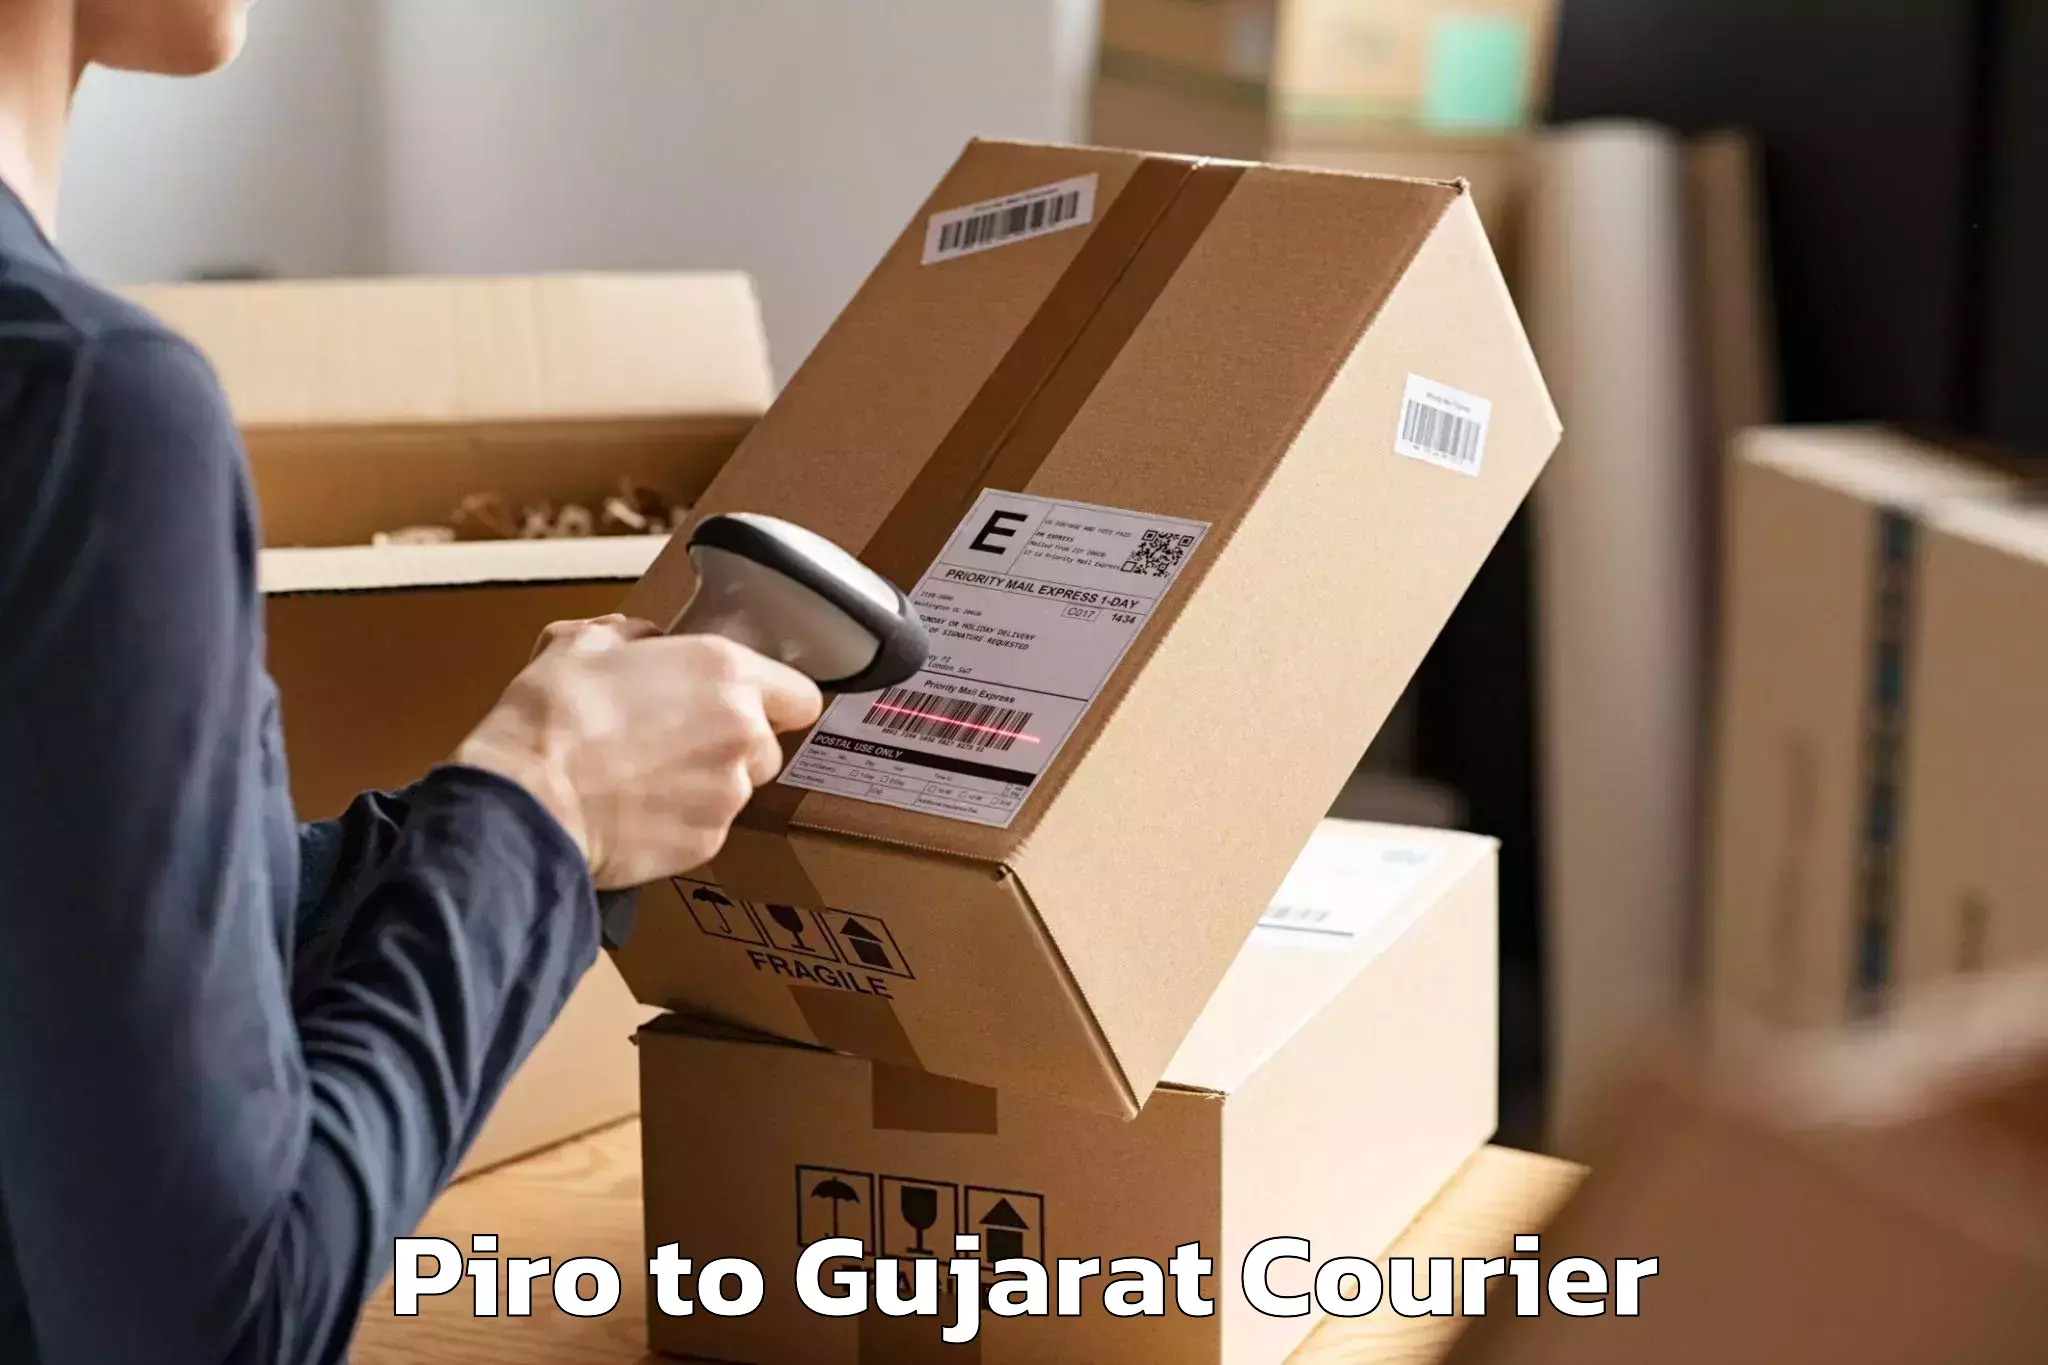 Efficient furniture transport Piro to Vyara